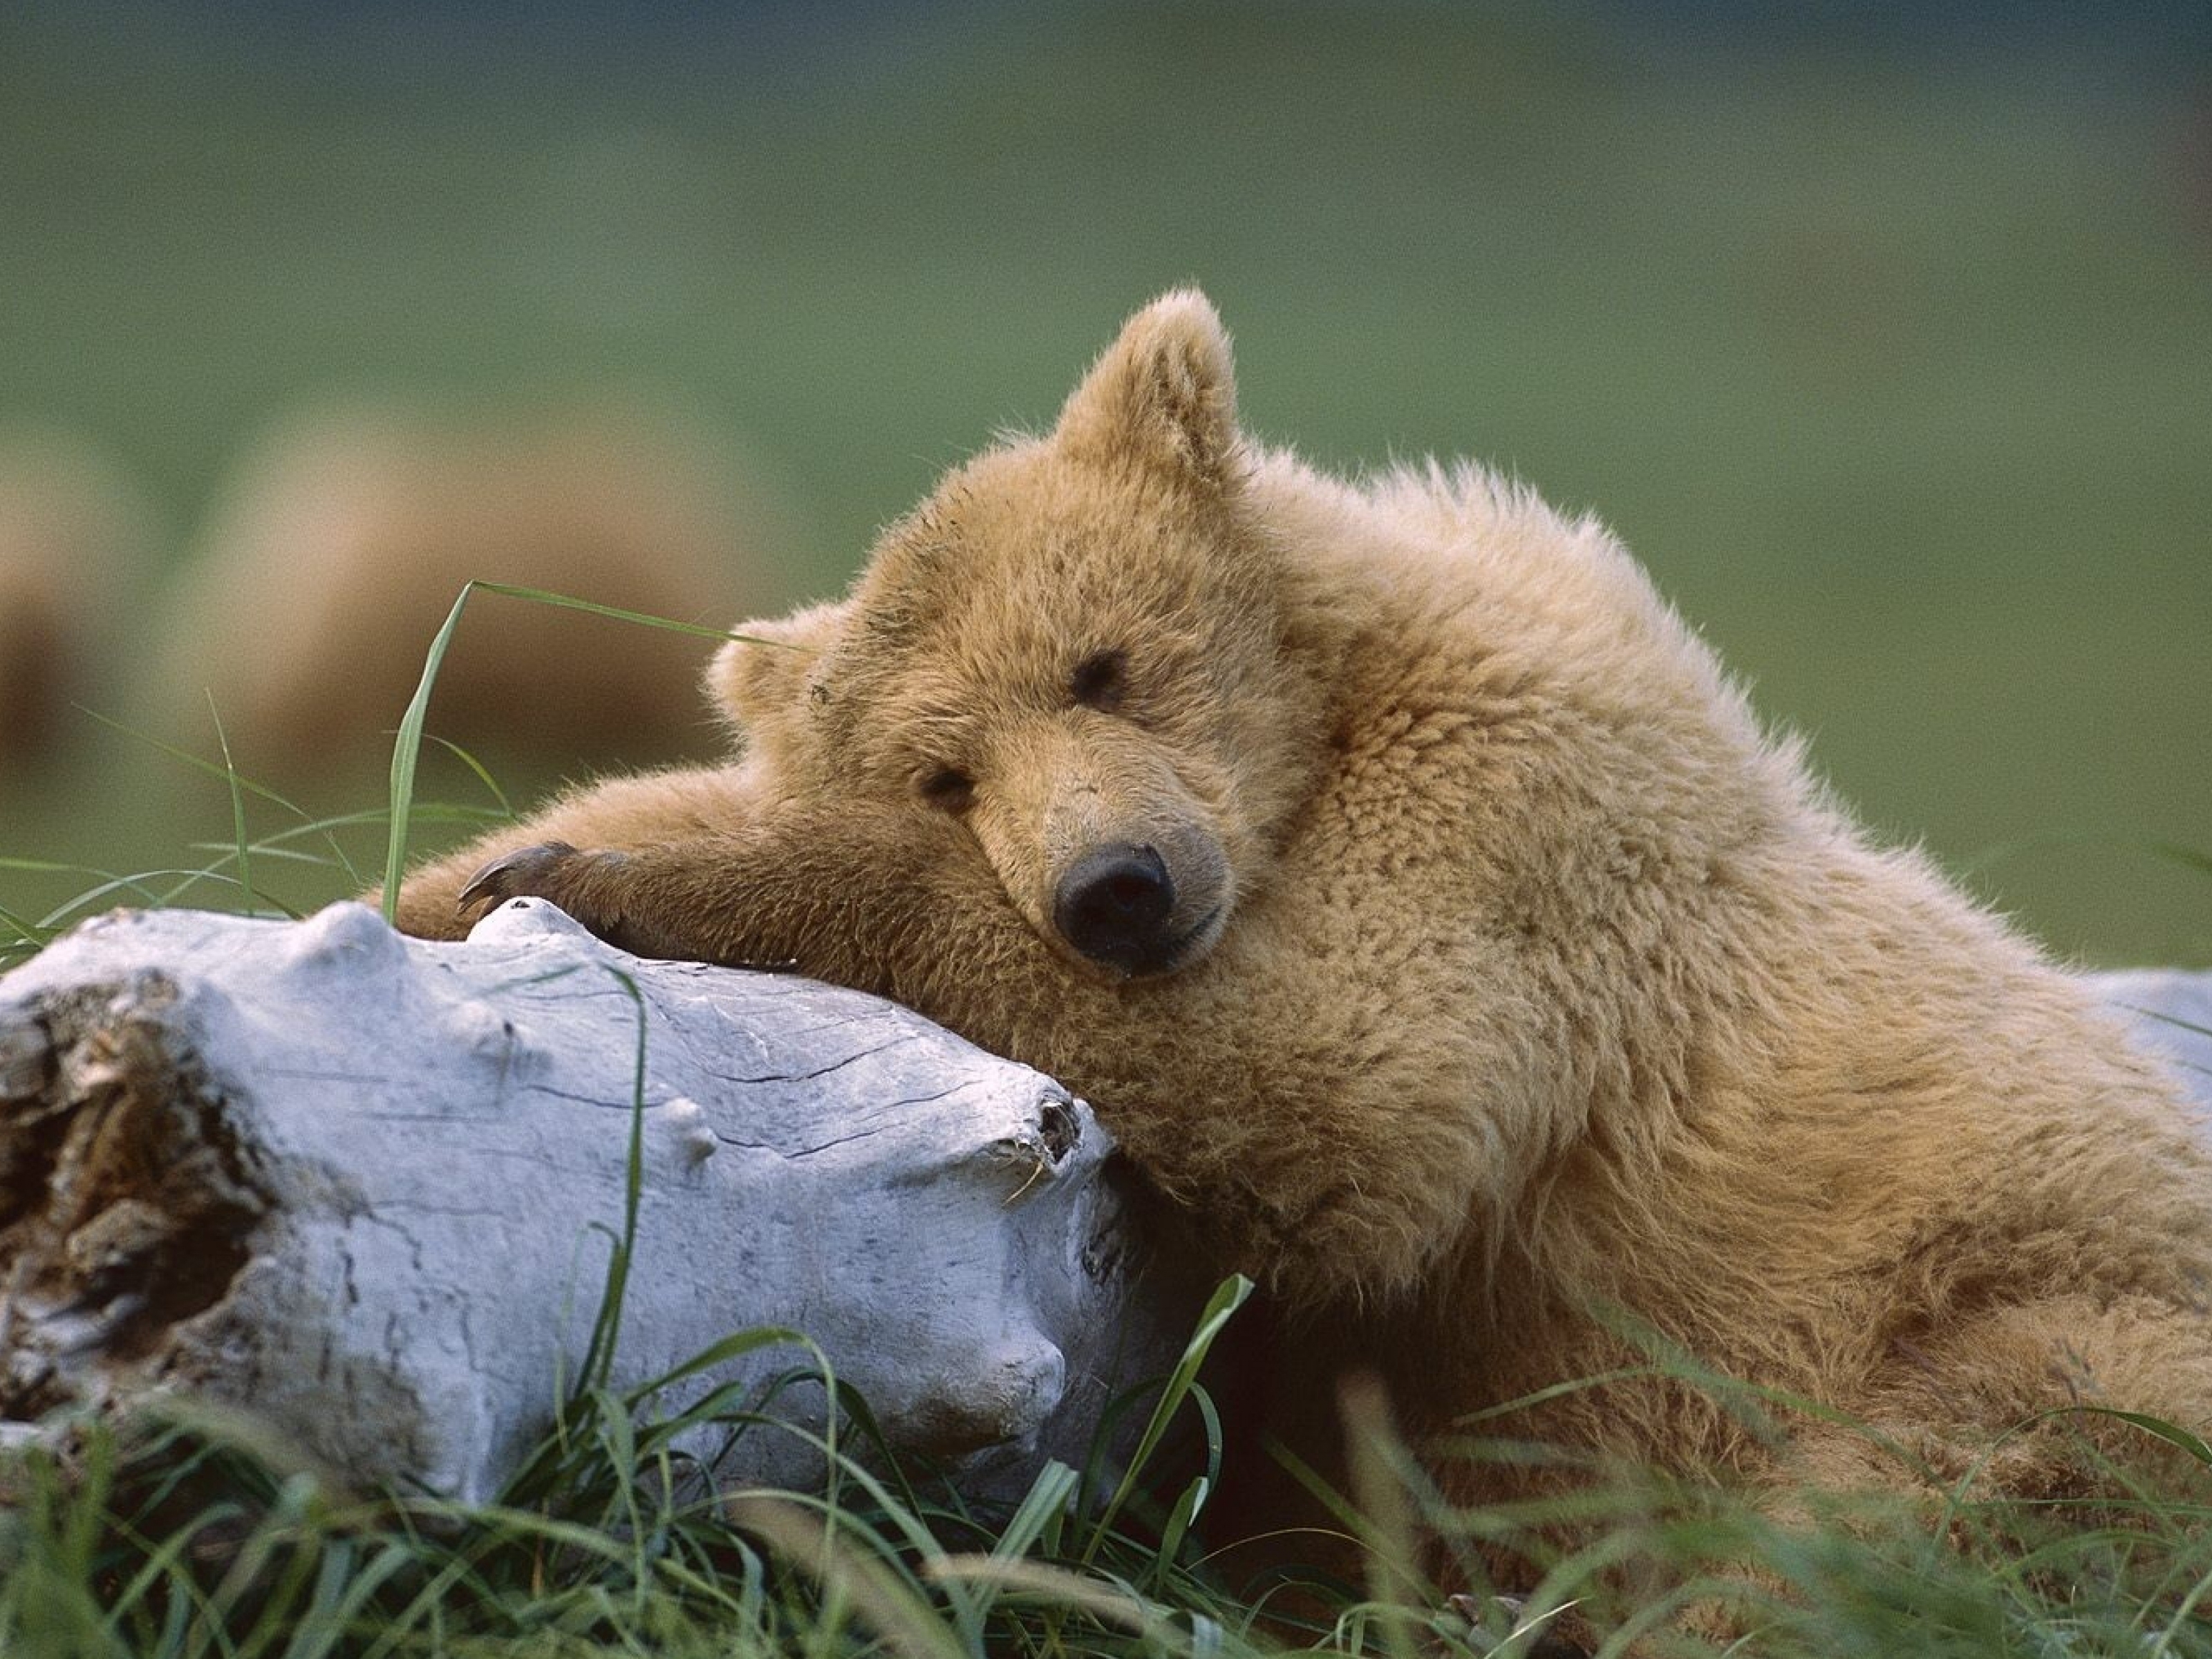 Картинка: Медведь, бурый, шерсть, нос, уши, дерево, трава, лежит, спит